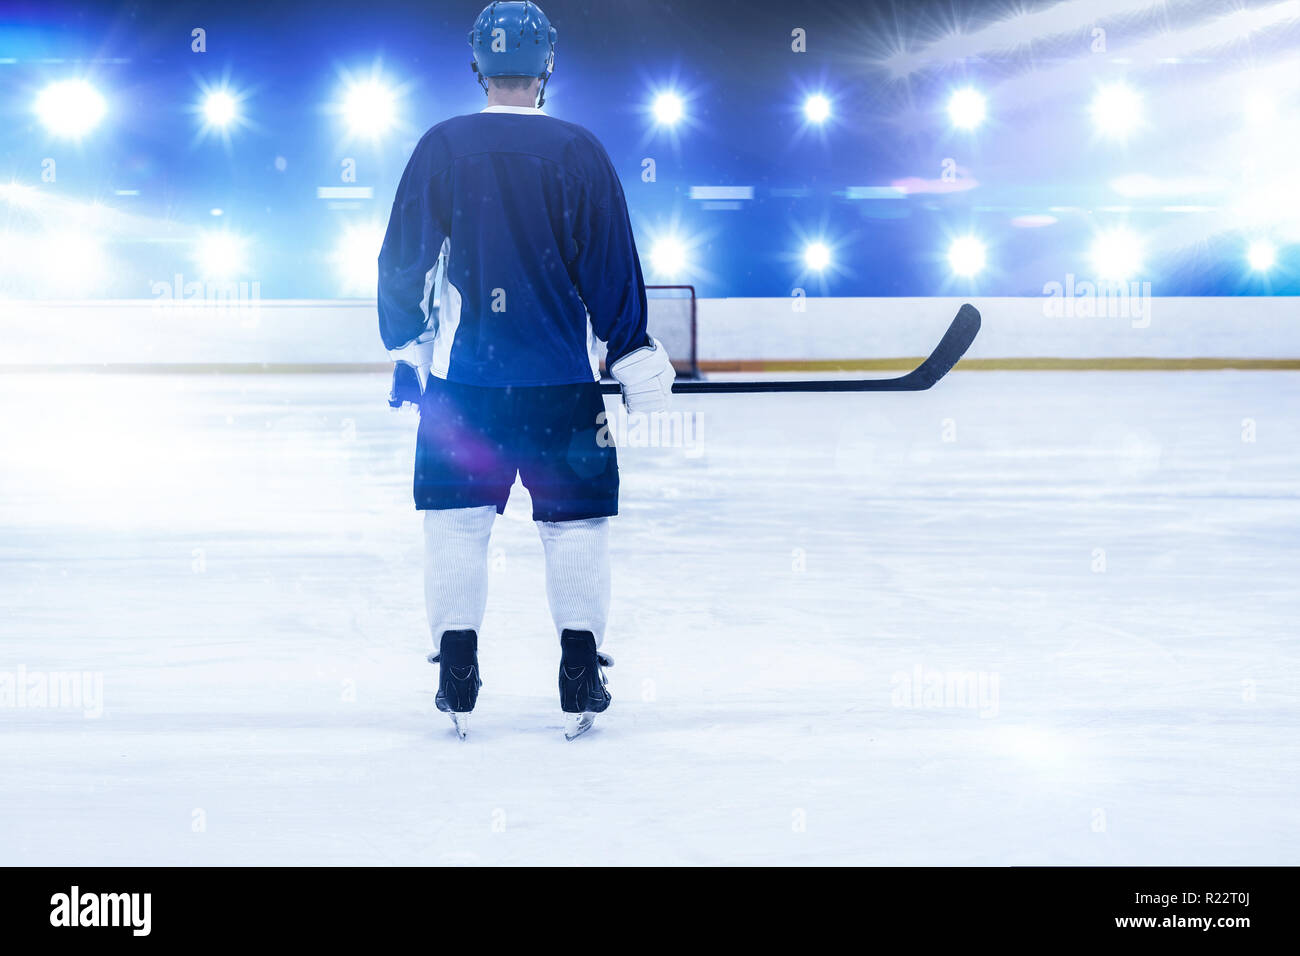 Immagine composita di ghiaccio giocatore di hockey su ghiaccio Foto Stock